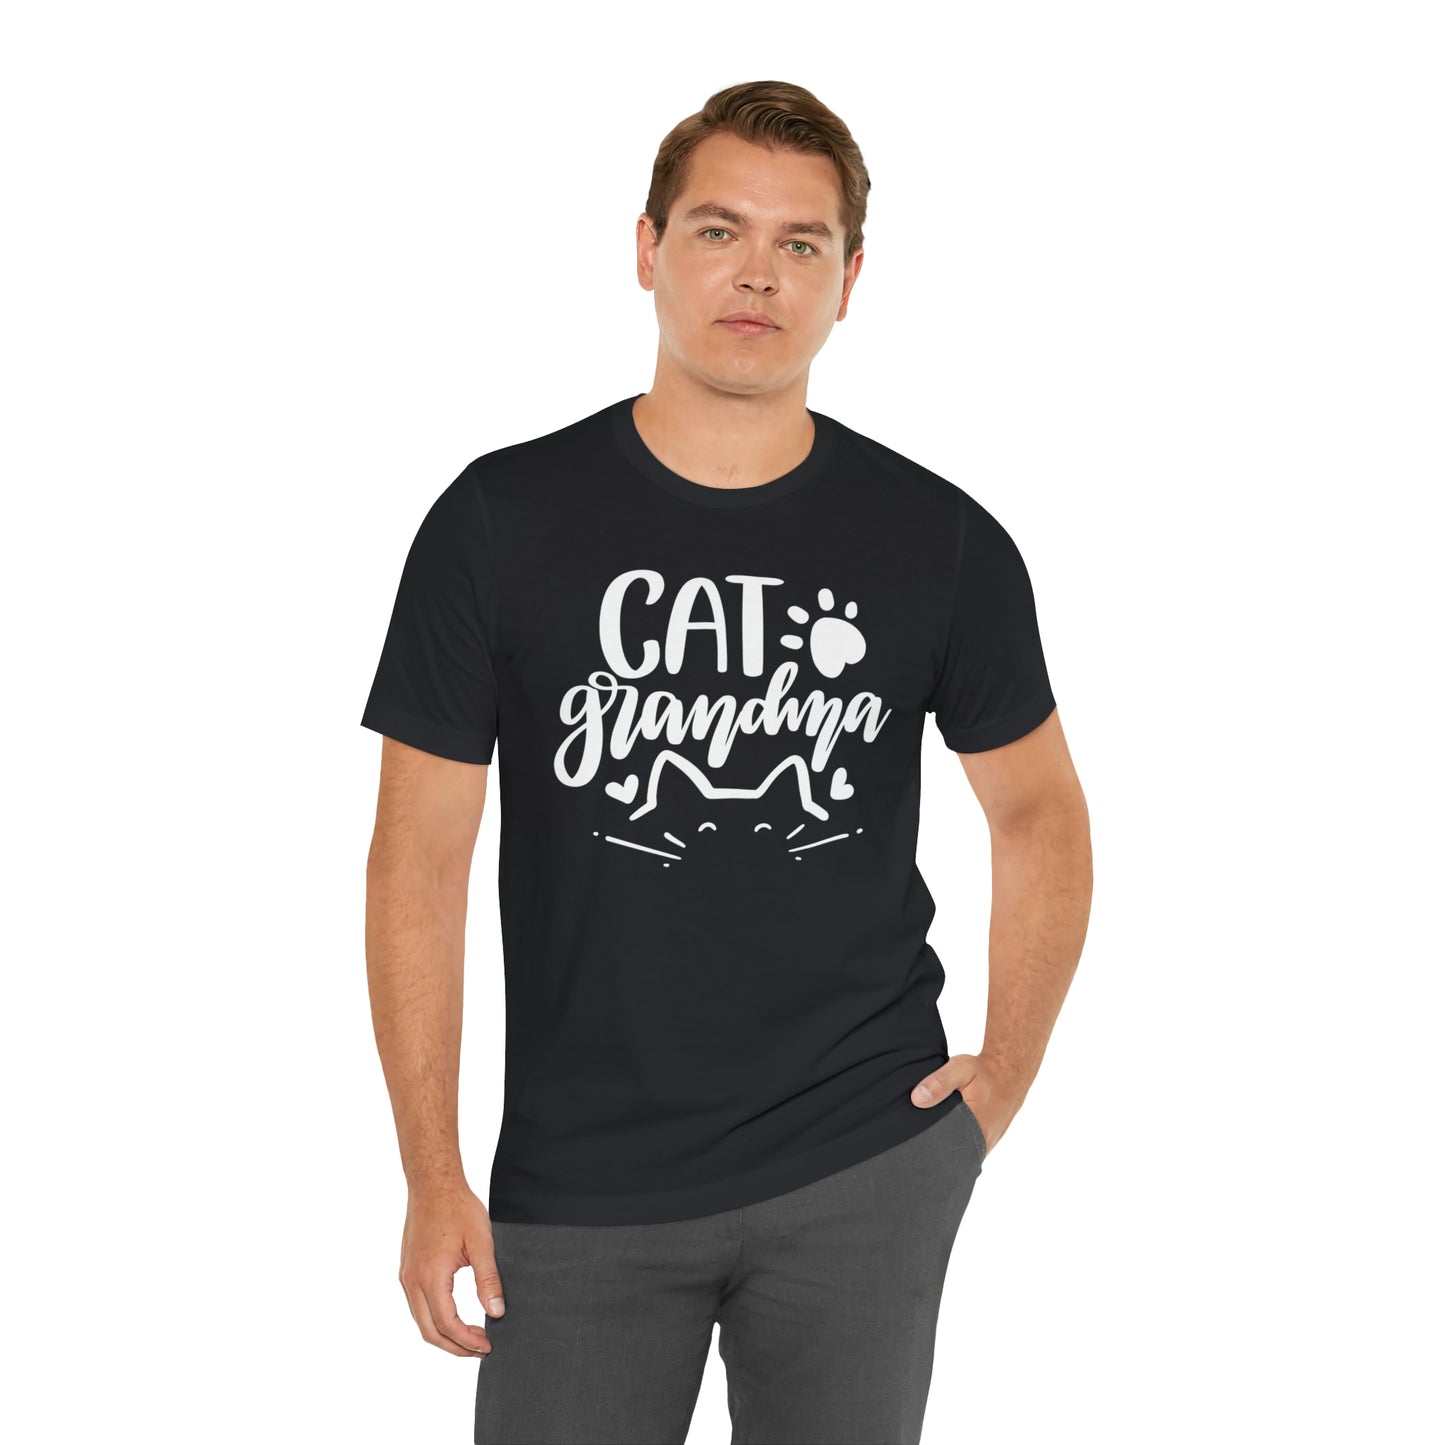 Cat Grandma Short Sleeve T-shirt